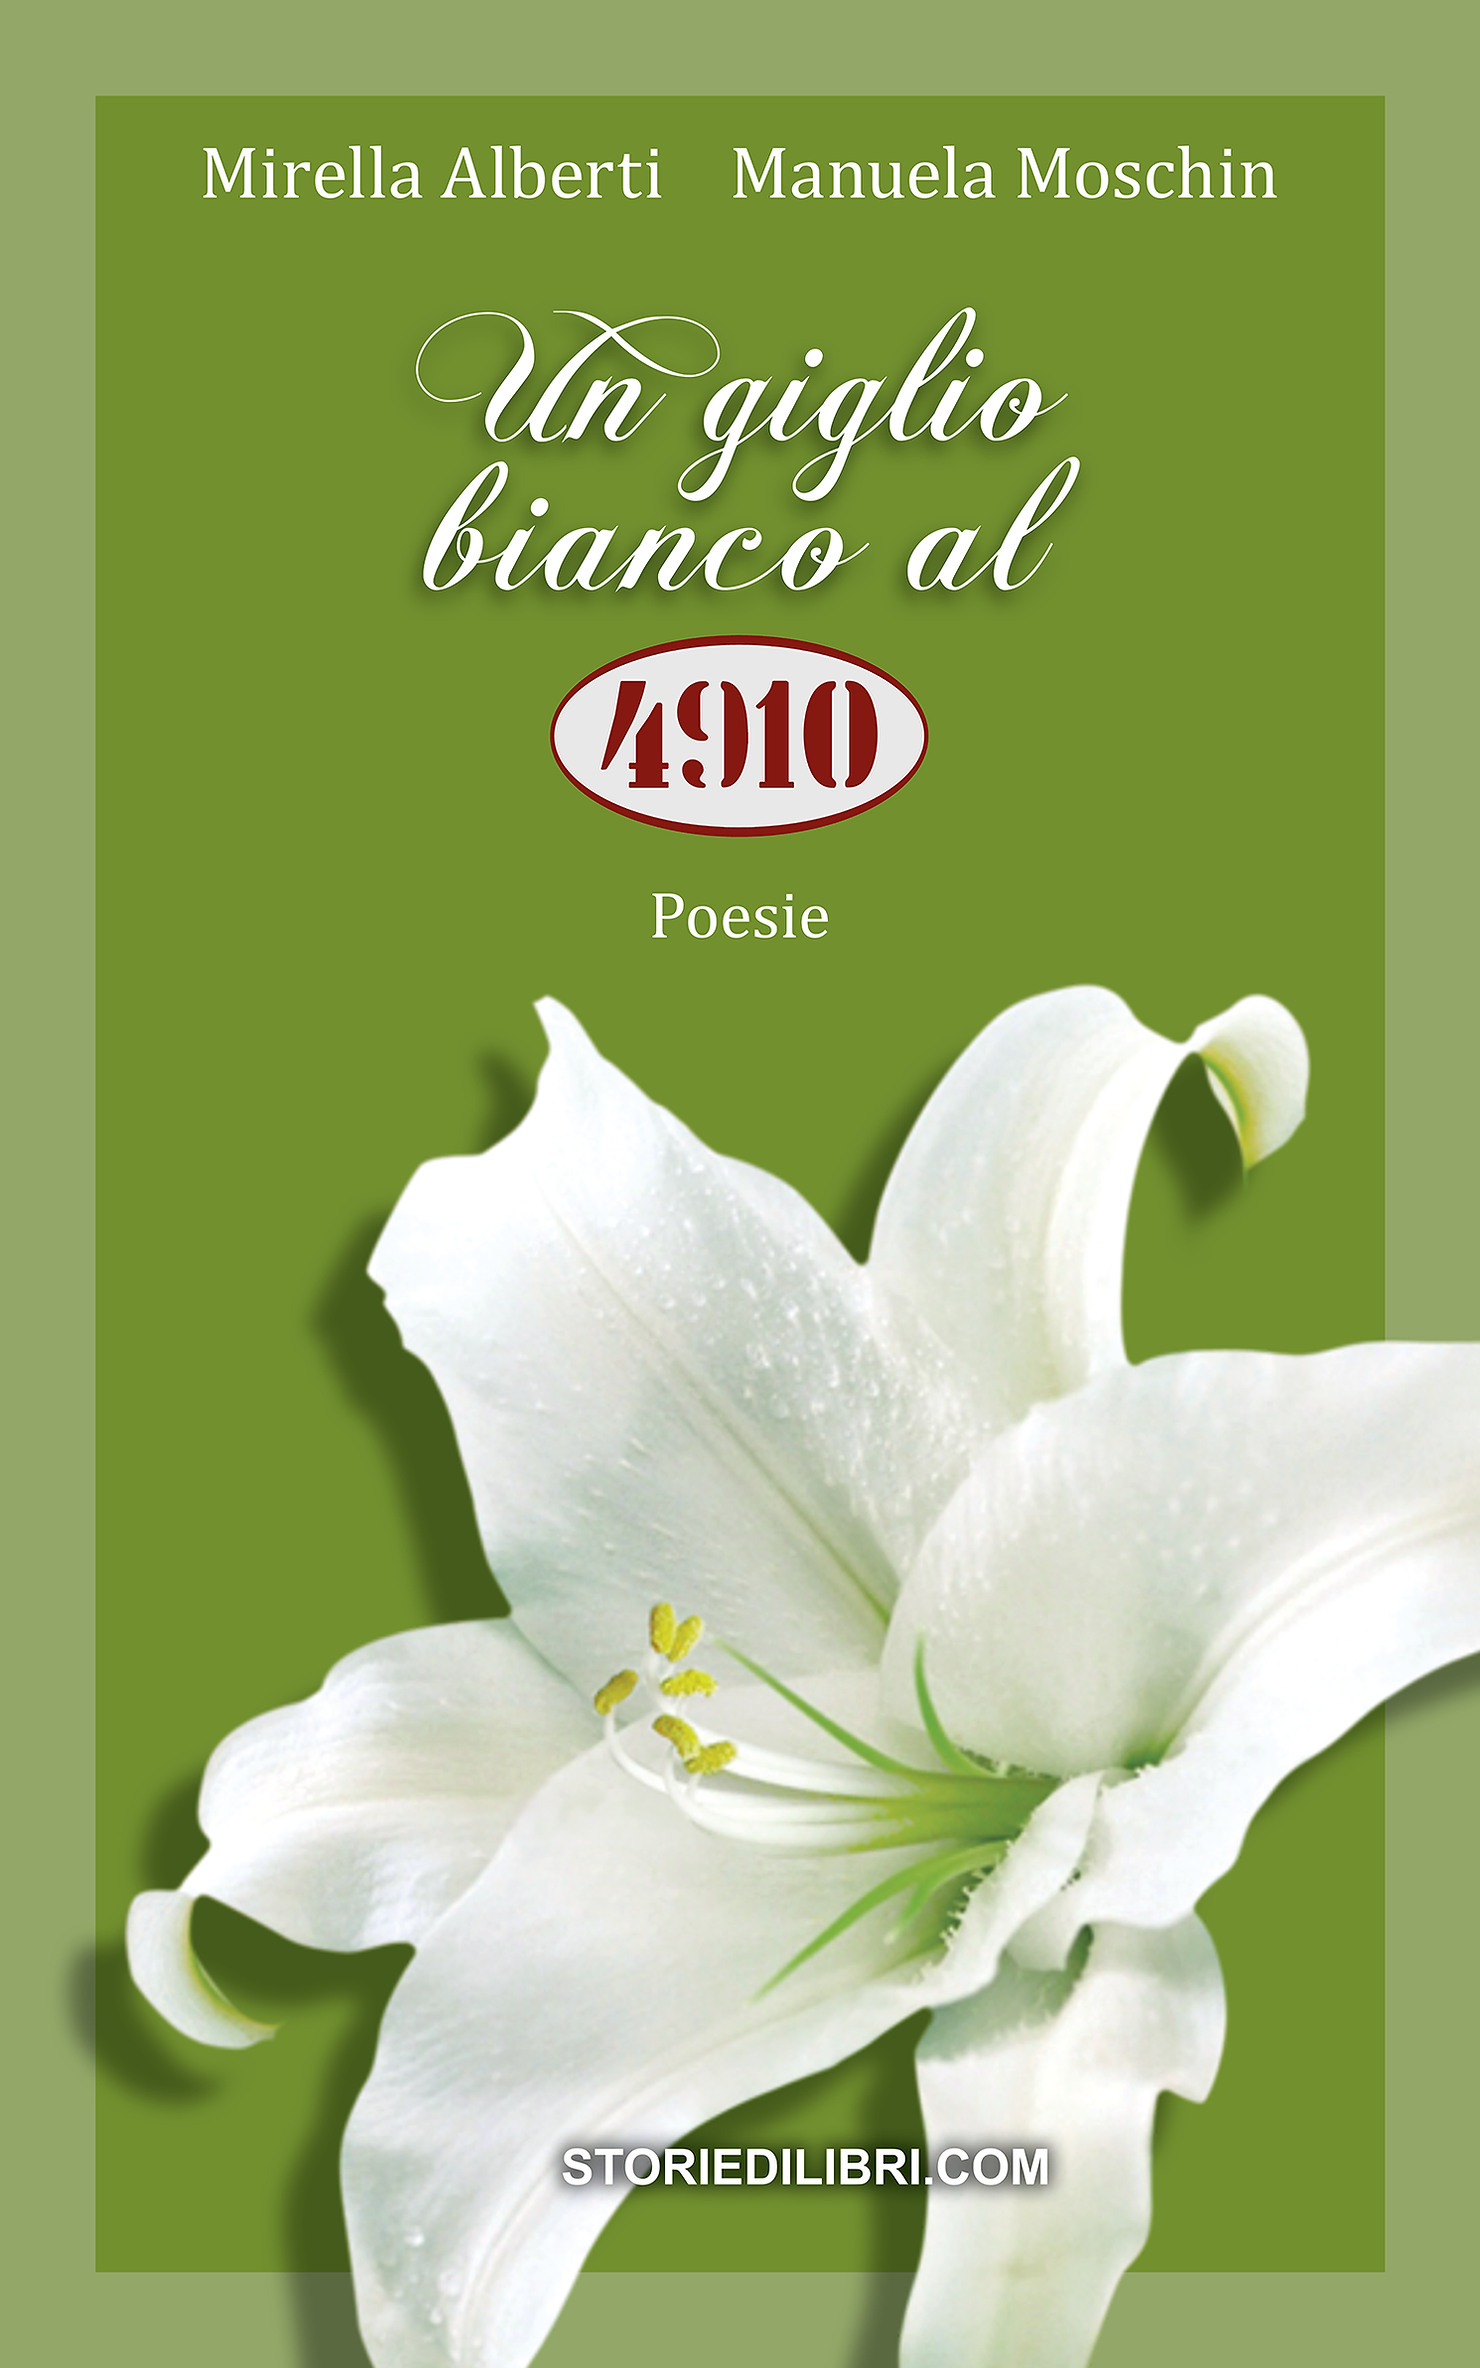 Un giglio bianco al 4910 è il nuovo libro scritto con Mirella Alberti, mia madre.